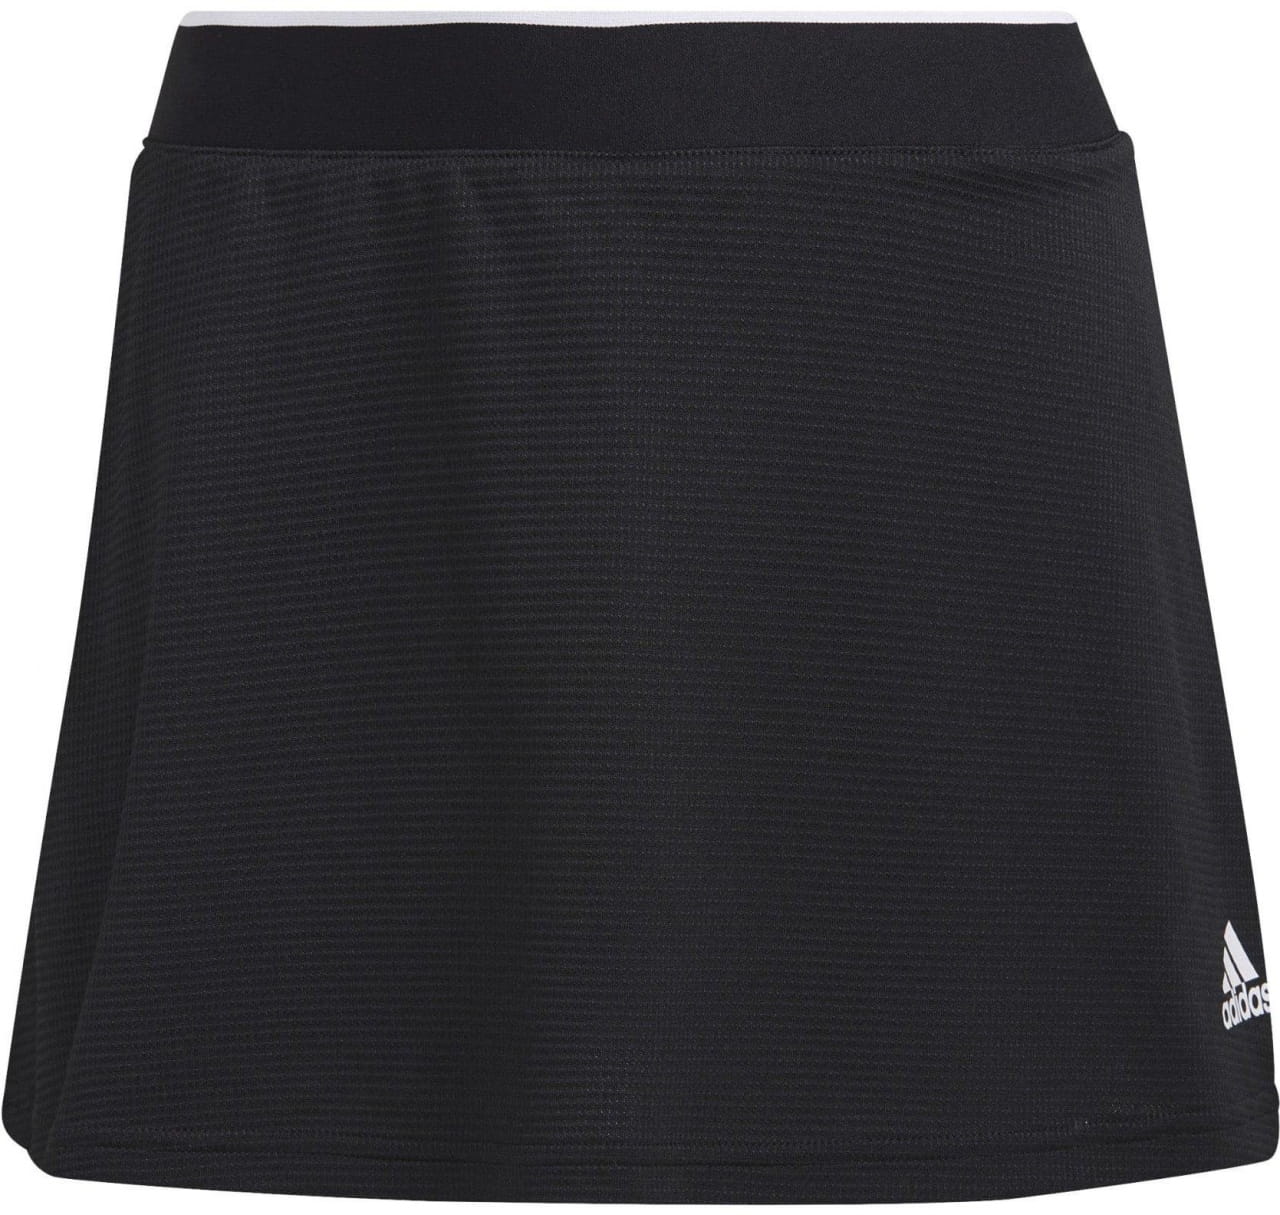 Tennisrock für Frauen adidas Club Skirt